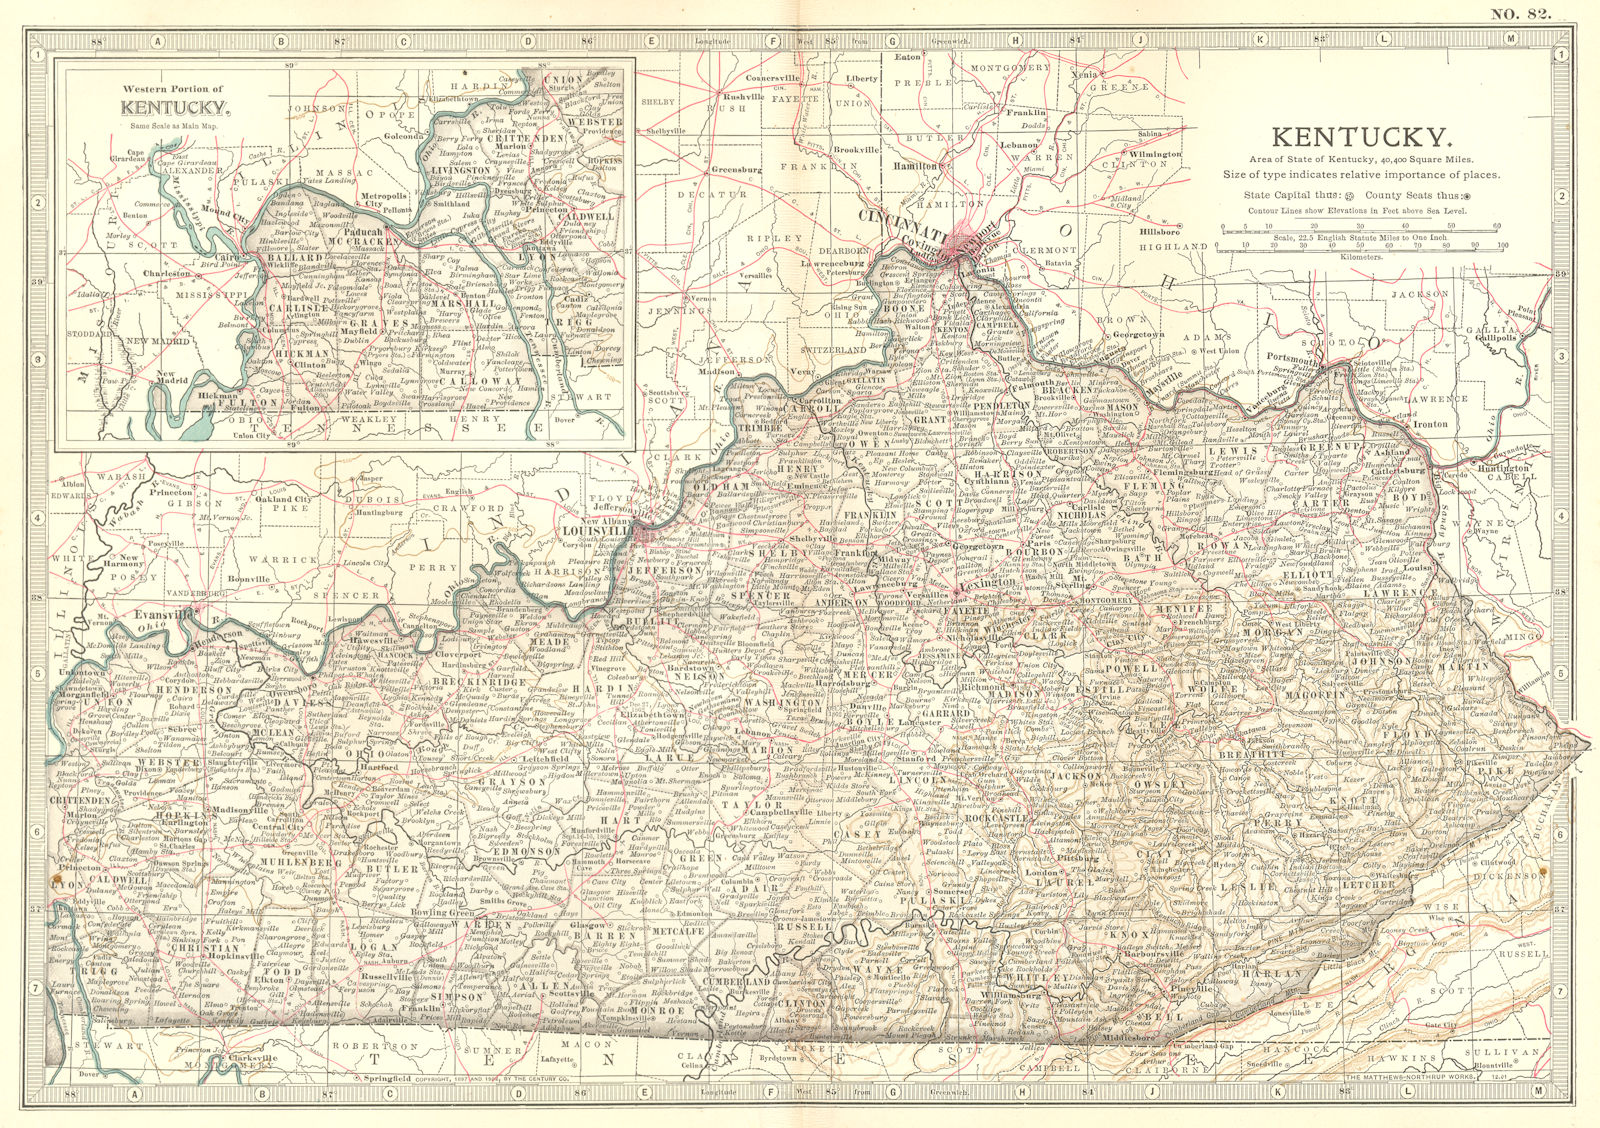 Associate Product KENTUCKY. State map showing civil war battlefields & dates. Britannica 1903